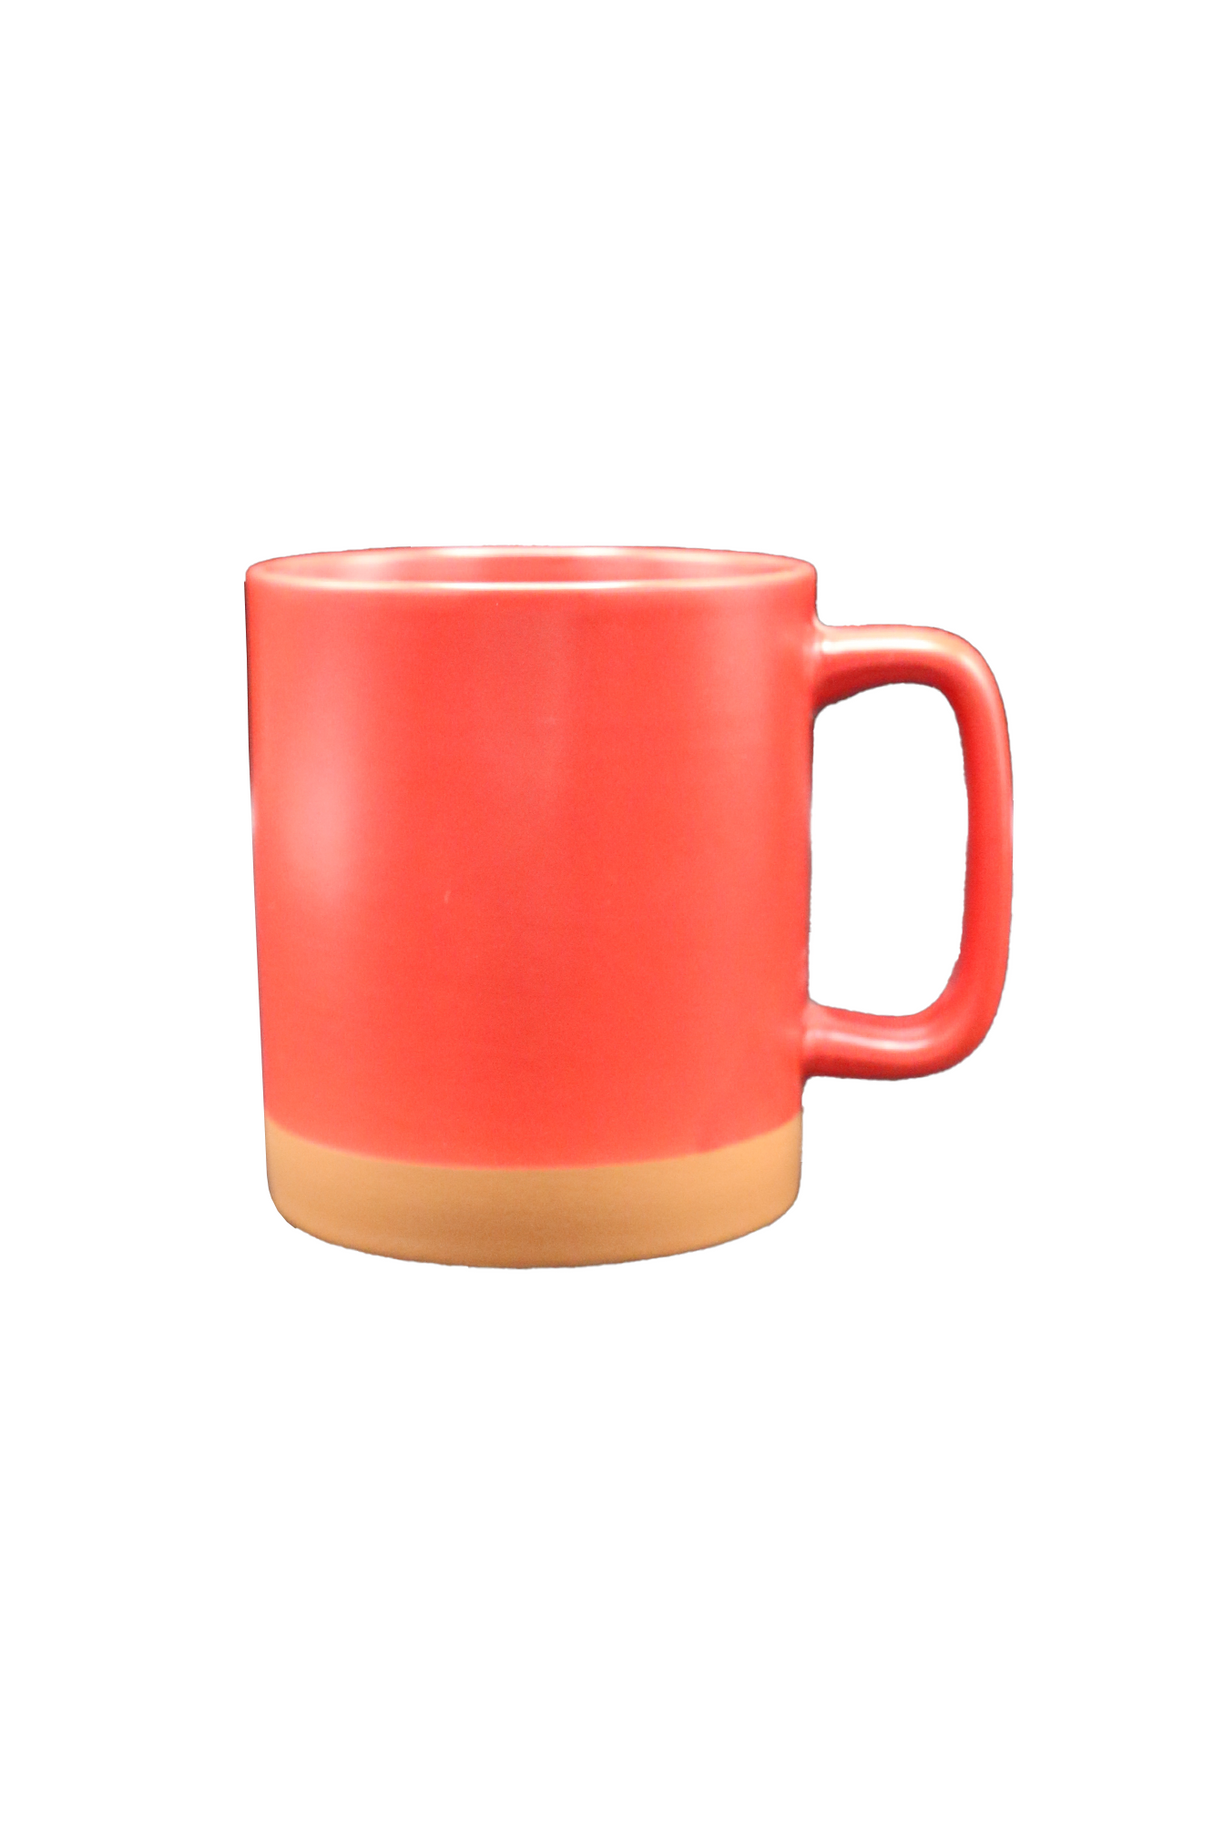 mug ceramic china